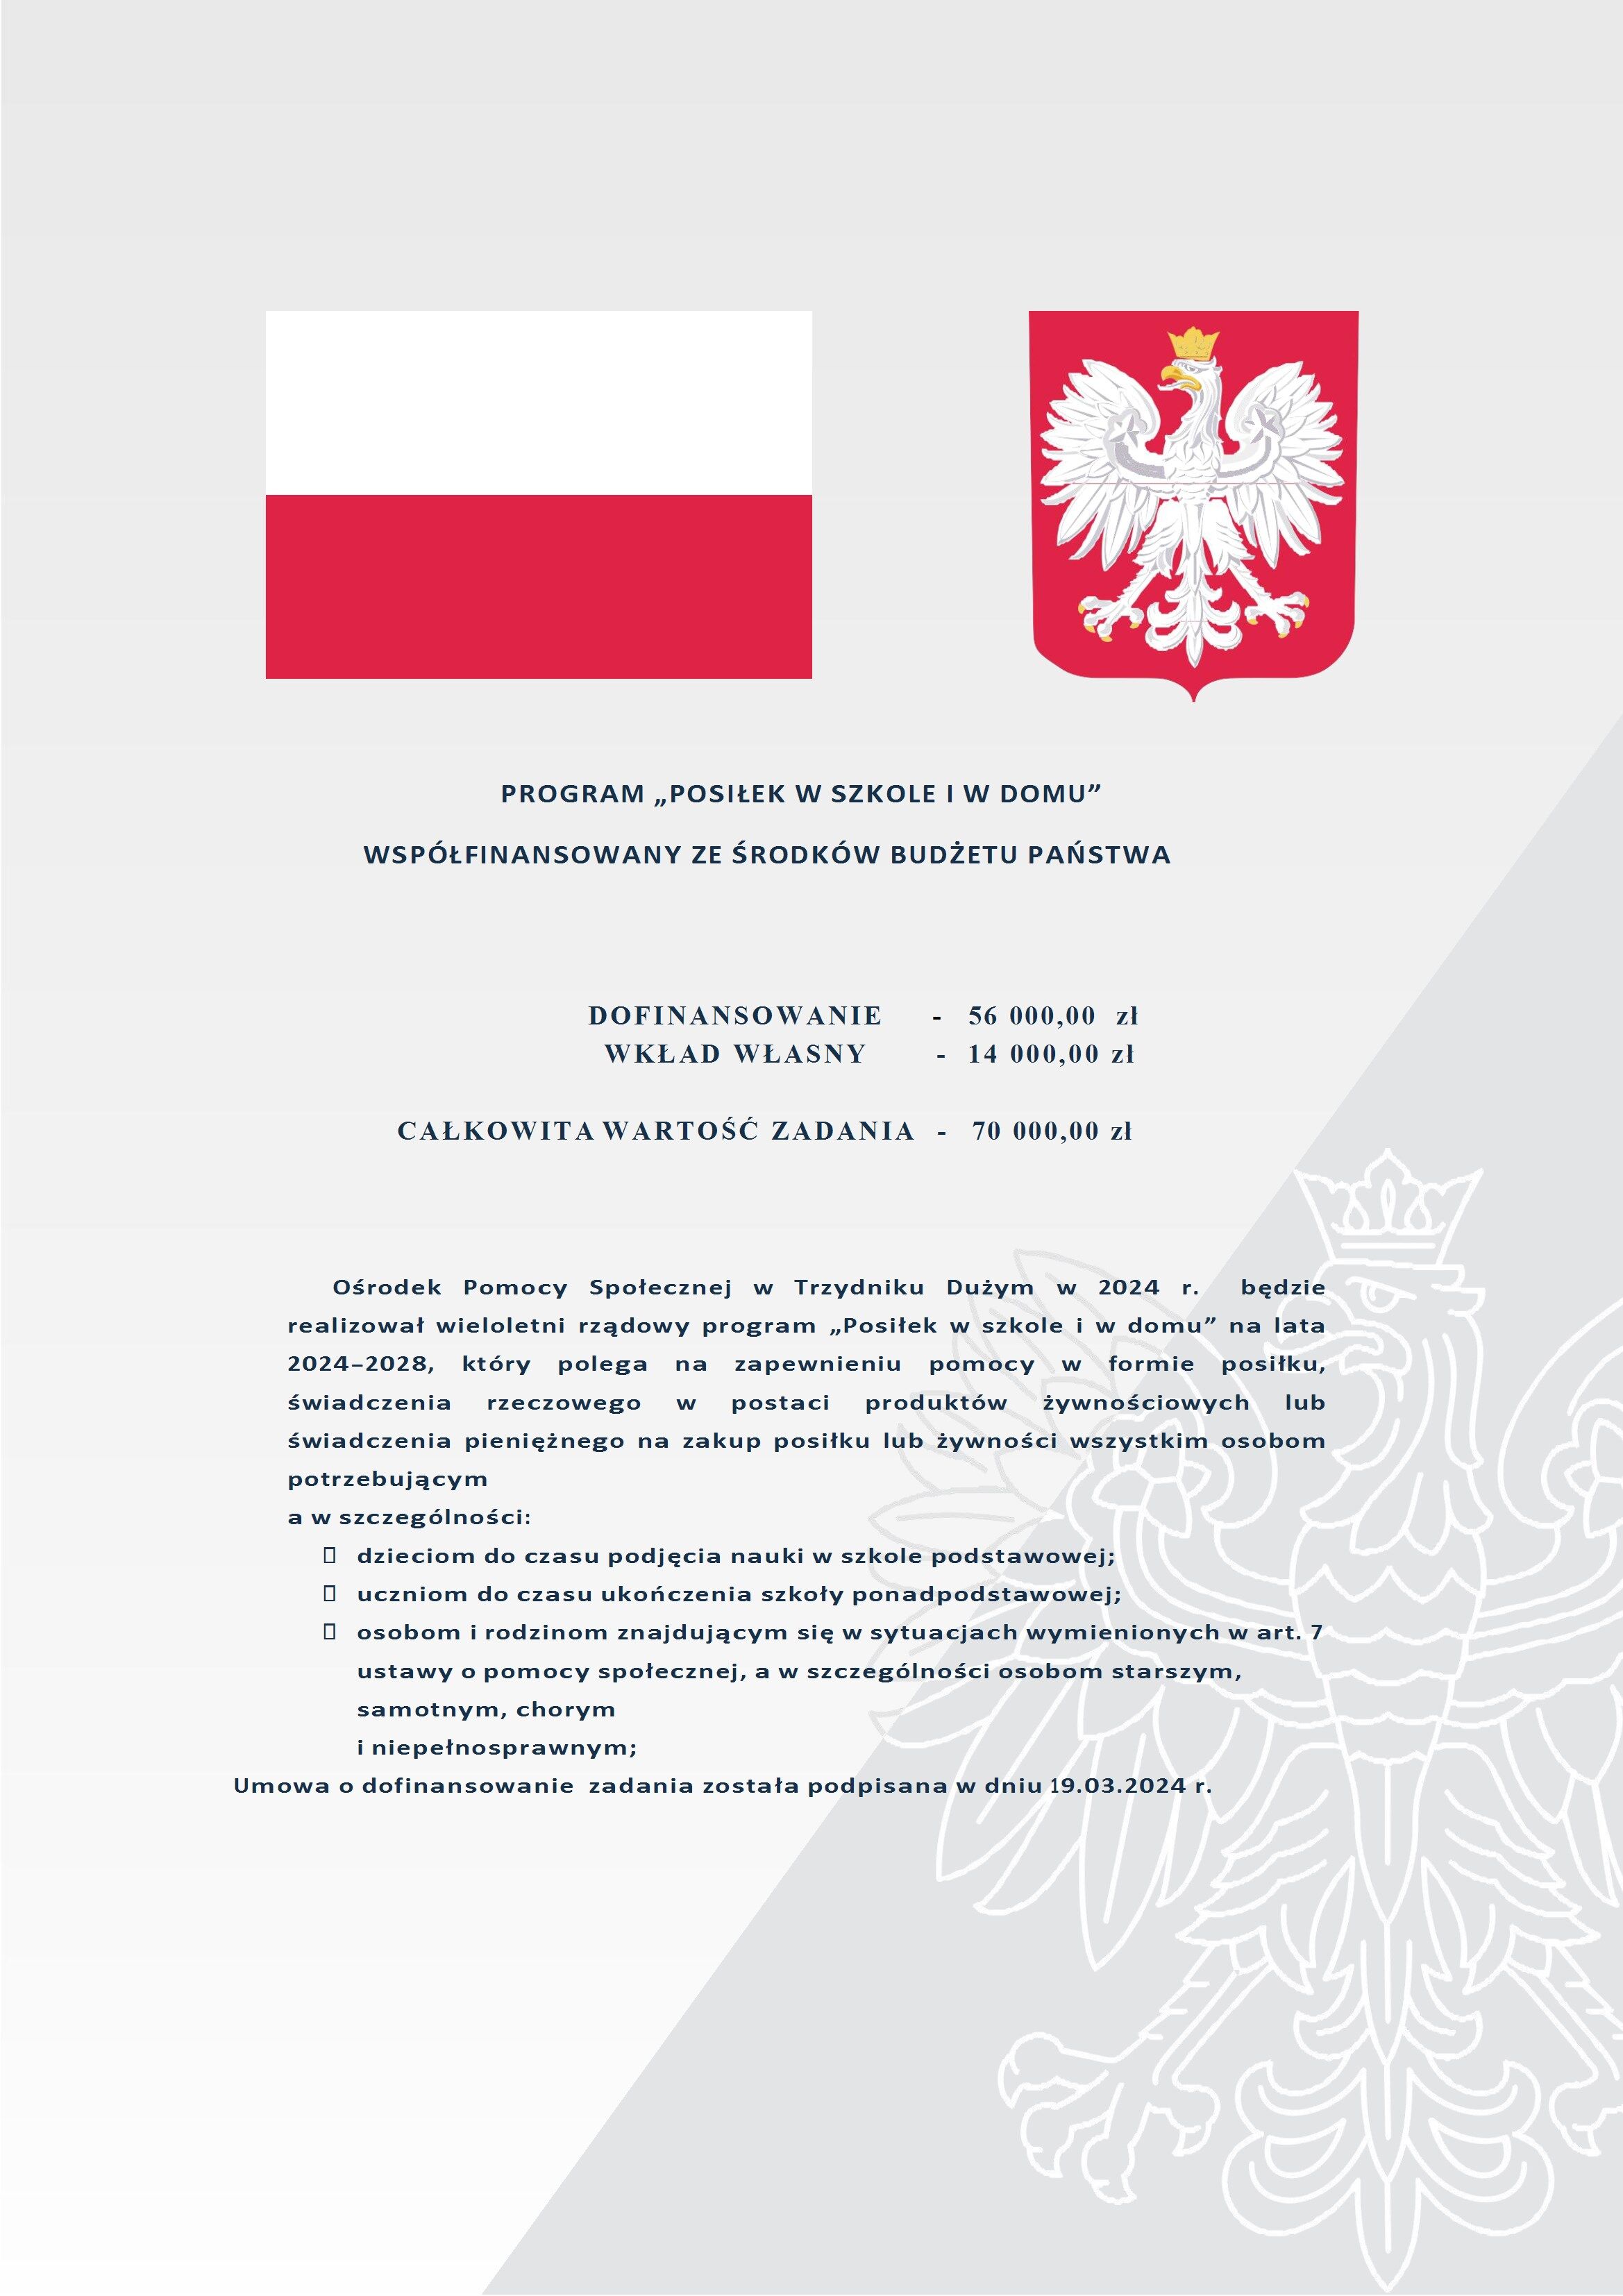 Zdjęcie prezentuje dokument z polskim tekstem i herbem Polski - białym orłem w koronie na czerwonym tle, dotyczący programu "Posiłek w szkole i w domu".